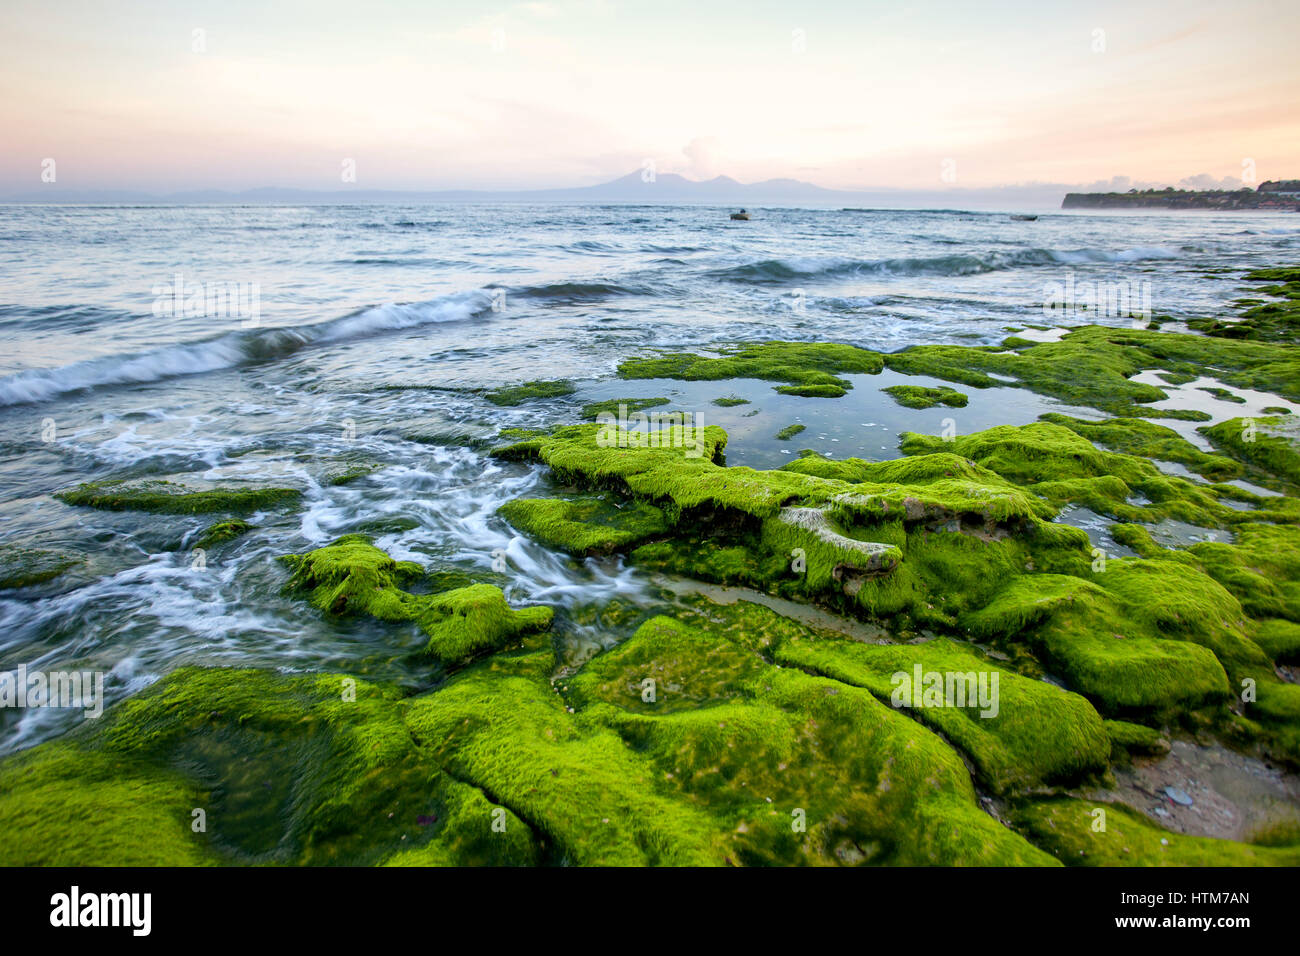 Côte rocheuse couverte d'algues vertes, face à la mer tôt le matin avec une vue sur le volcan et les montagnes. Indonésie Bali Banque D'Images